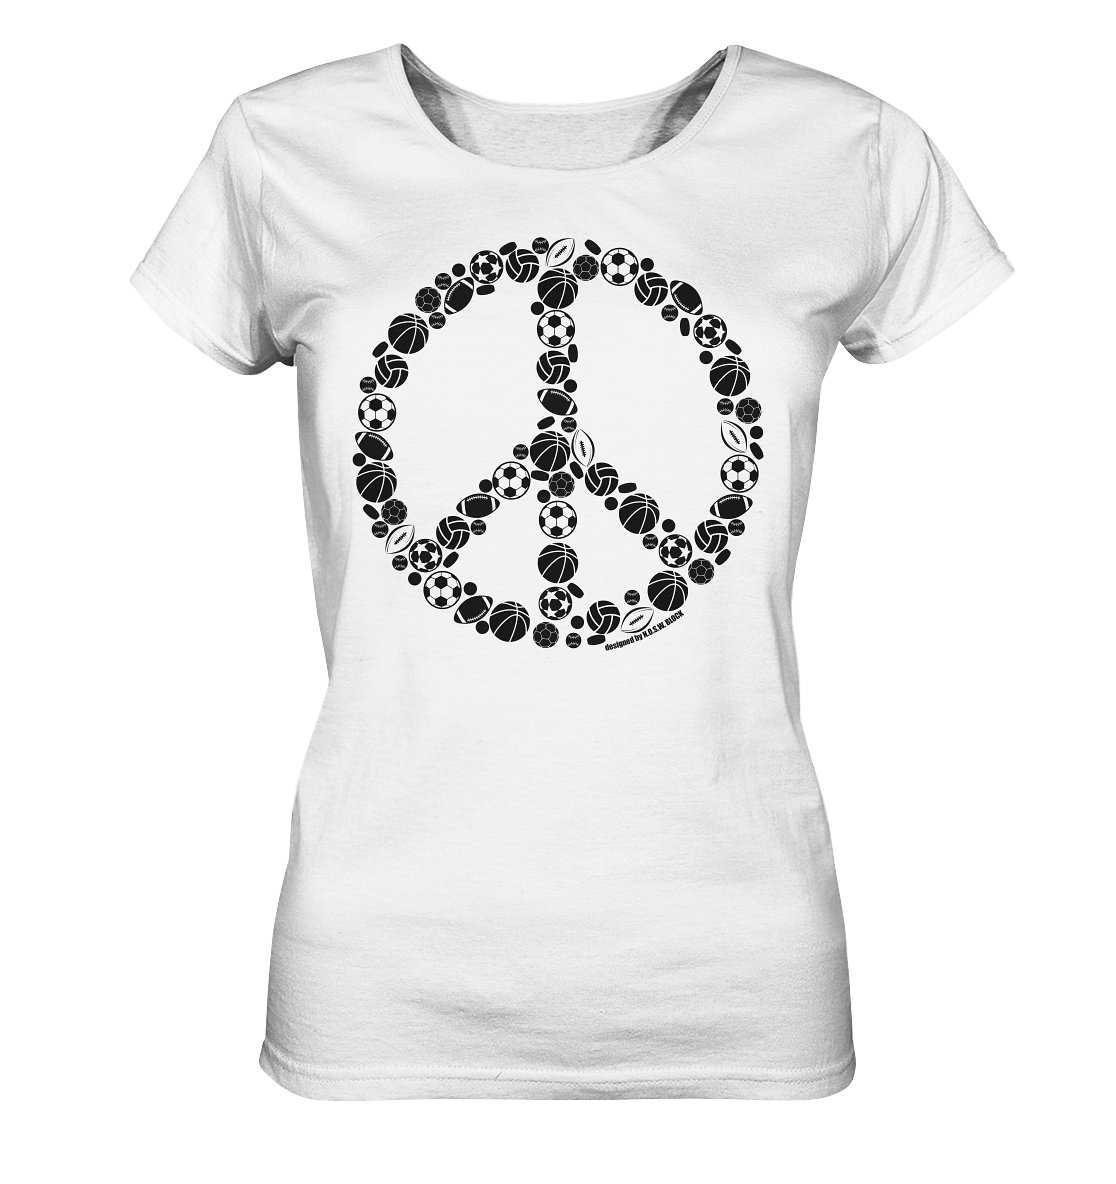 N.O.S.W. BLOCK Shirt "SPORTS FOR PEACE" Girls Organic T-Shirt weiss